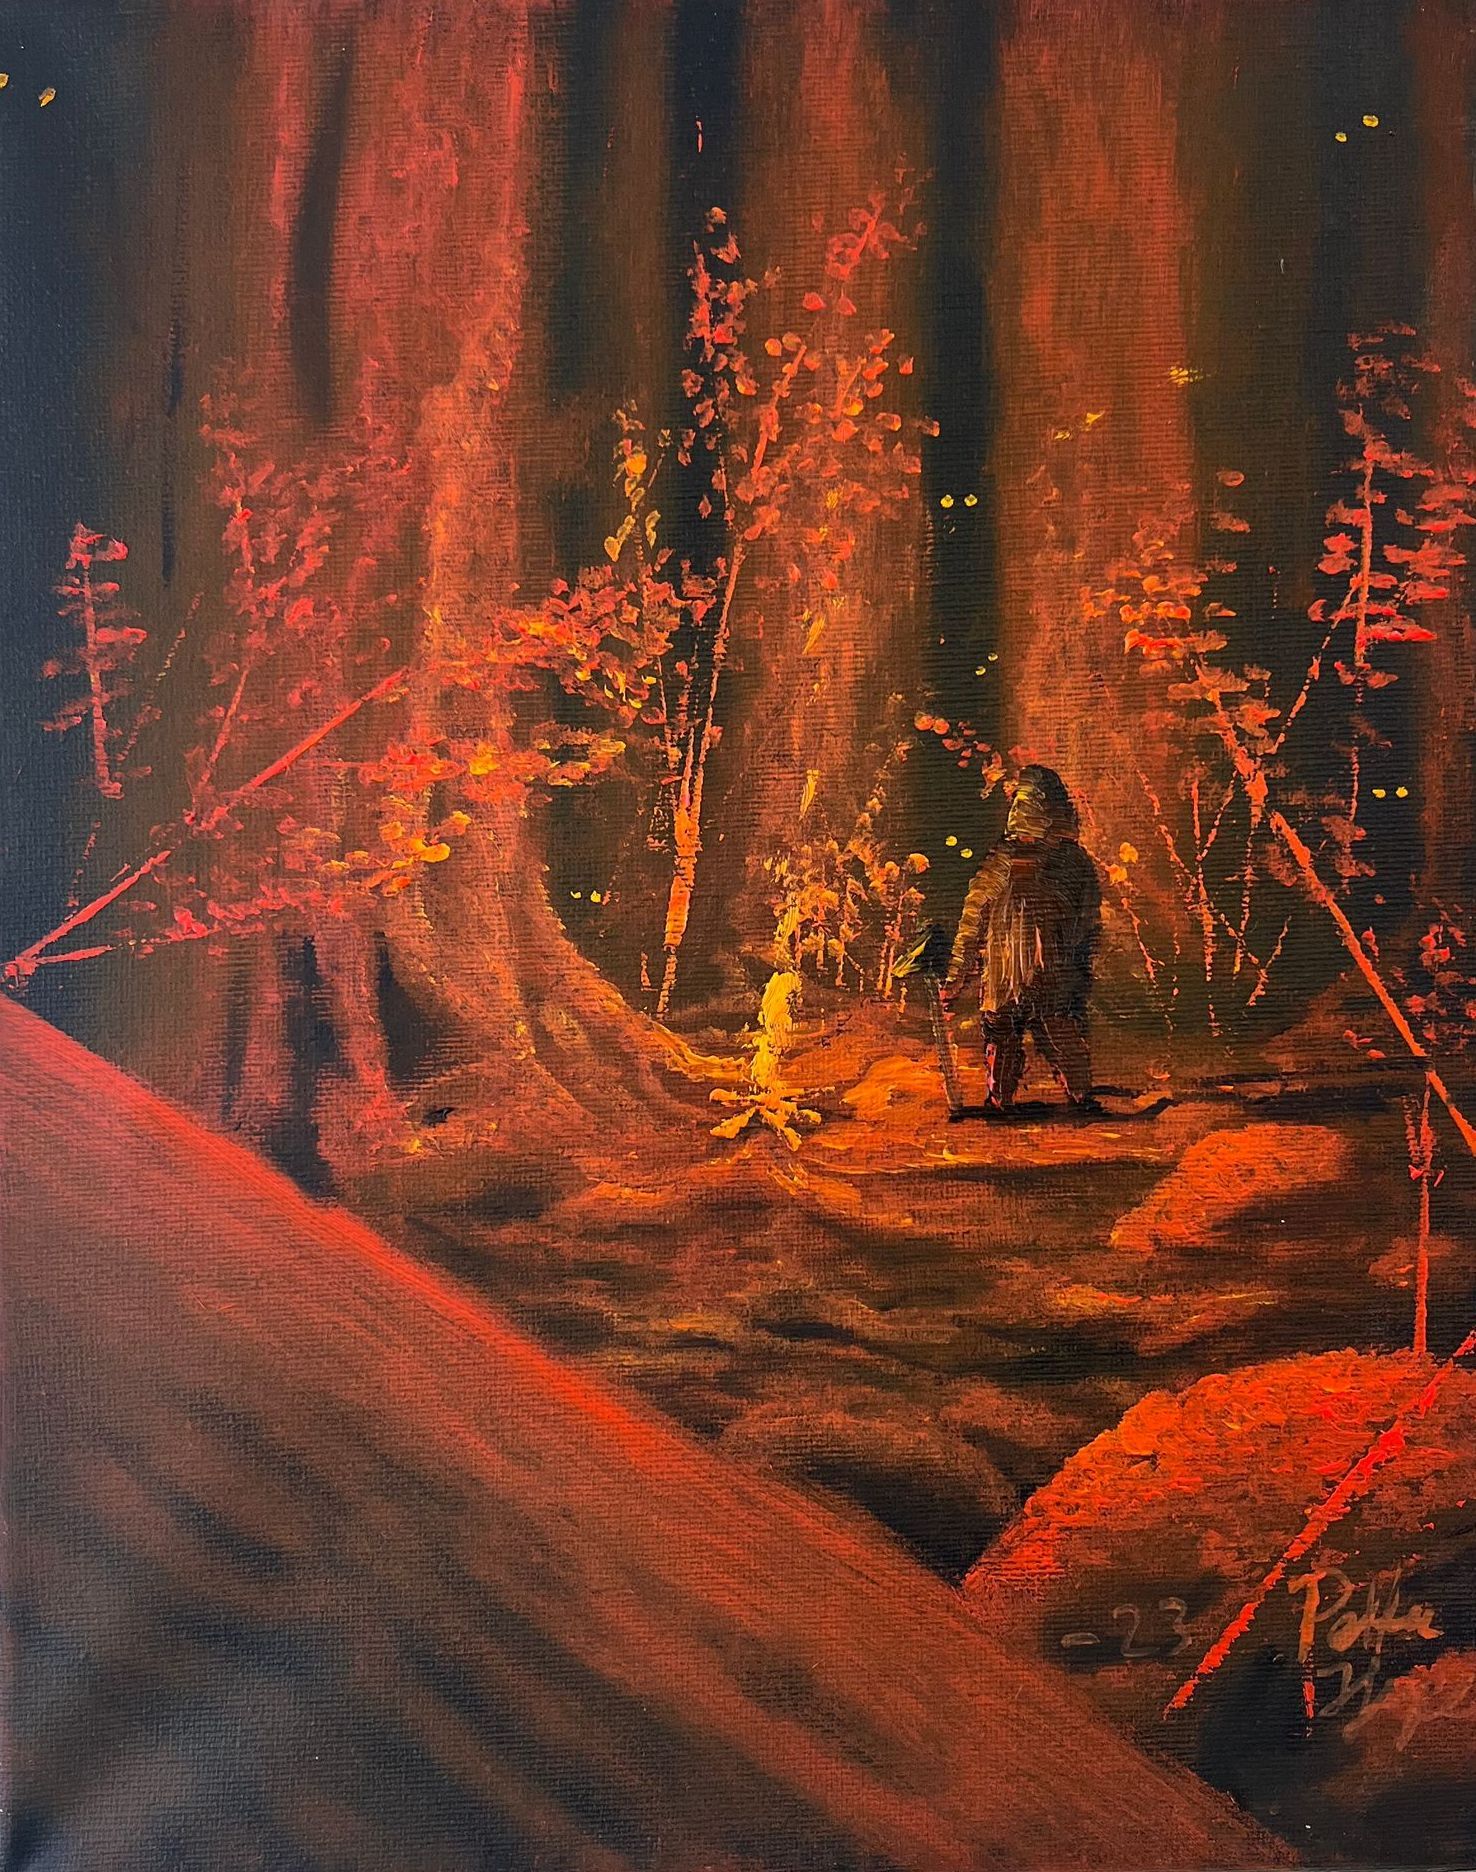 målning i röda toner av Petter Hjerpe, med mystiskt skogsmotiv